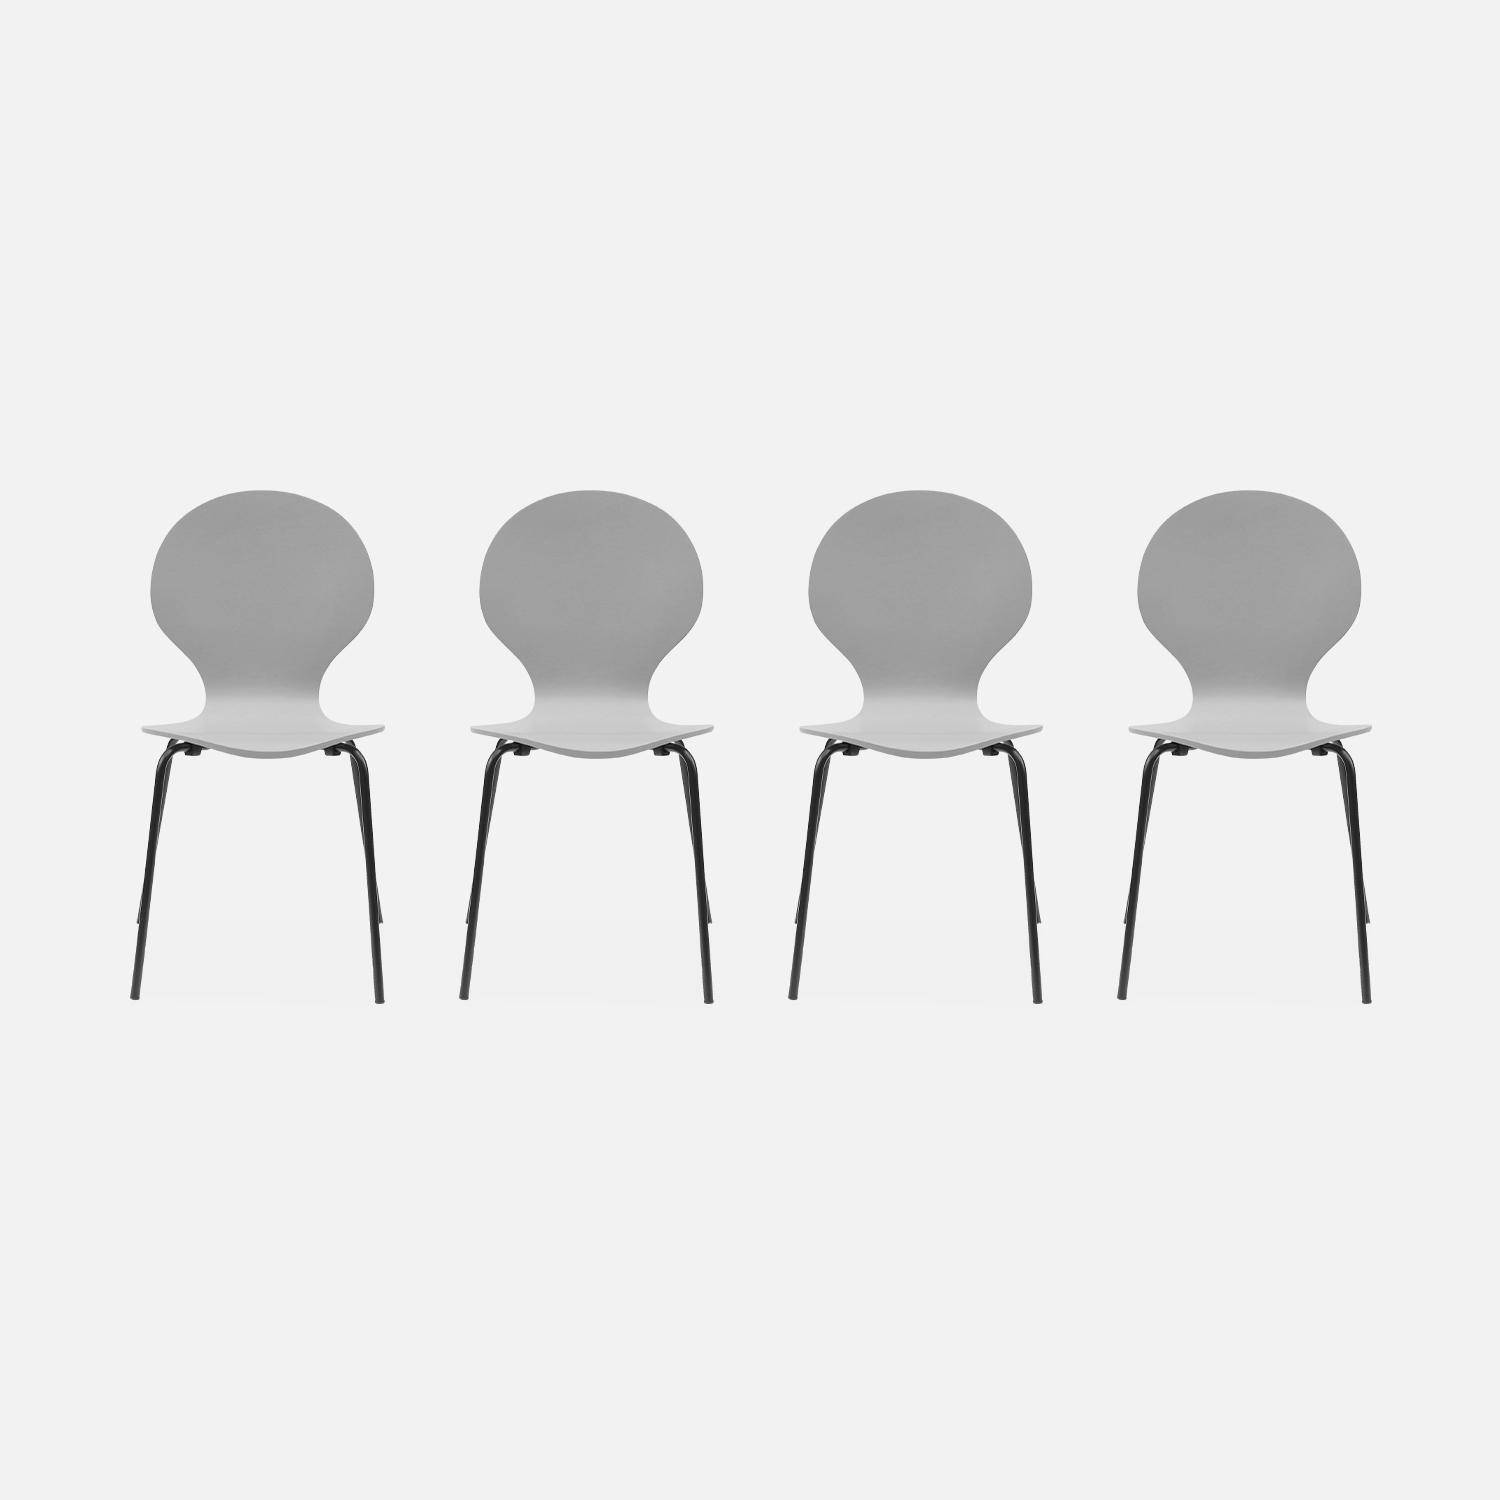 4er Set stapelbare Retro-Stühle in grau, Hevea-Holz und Sperrholz, Stahlbeine, Naomi, B 43 x T 48 x H 87cm Photo3